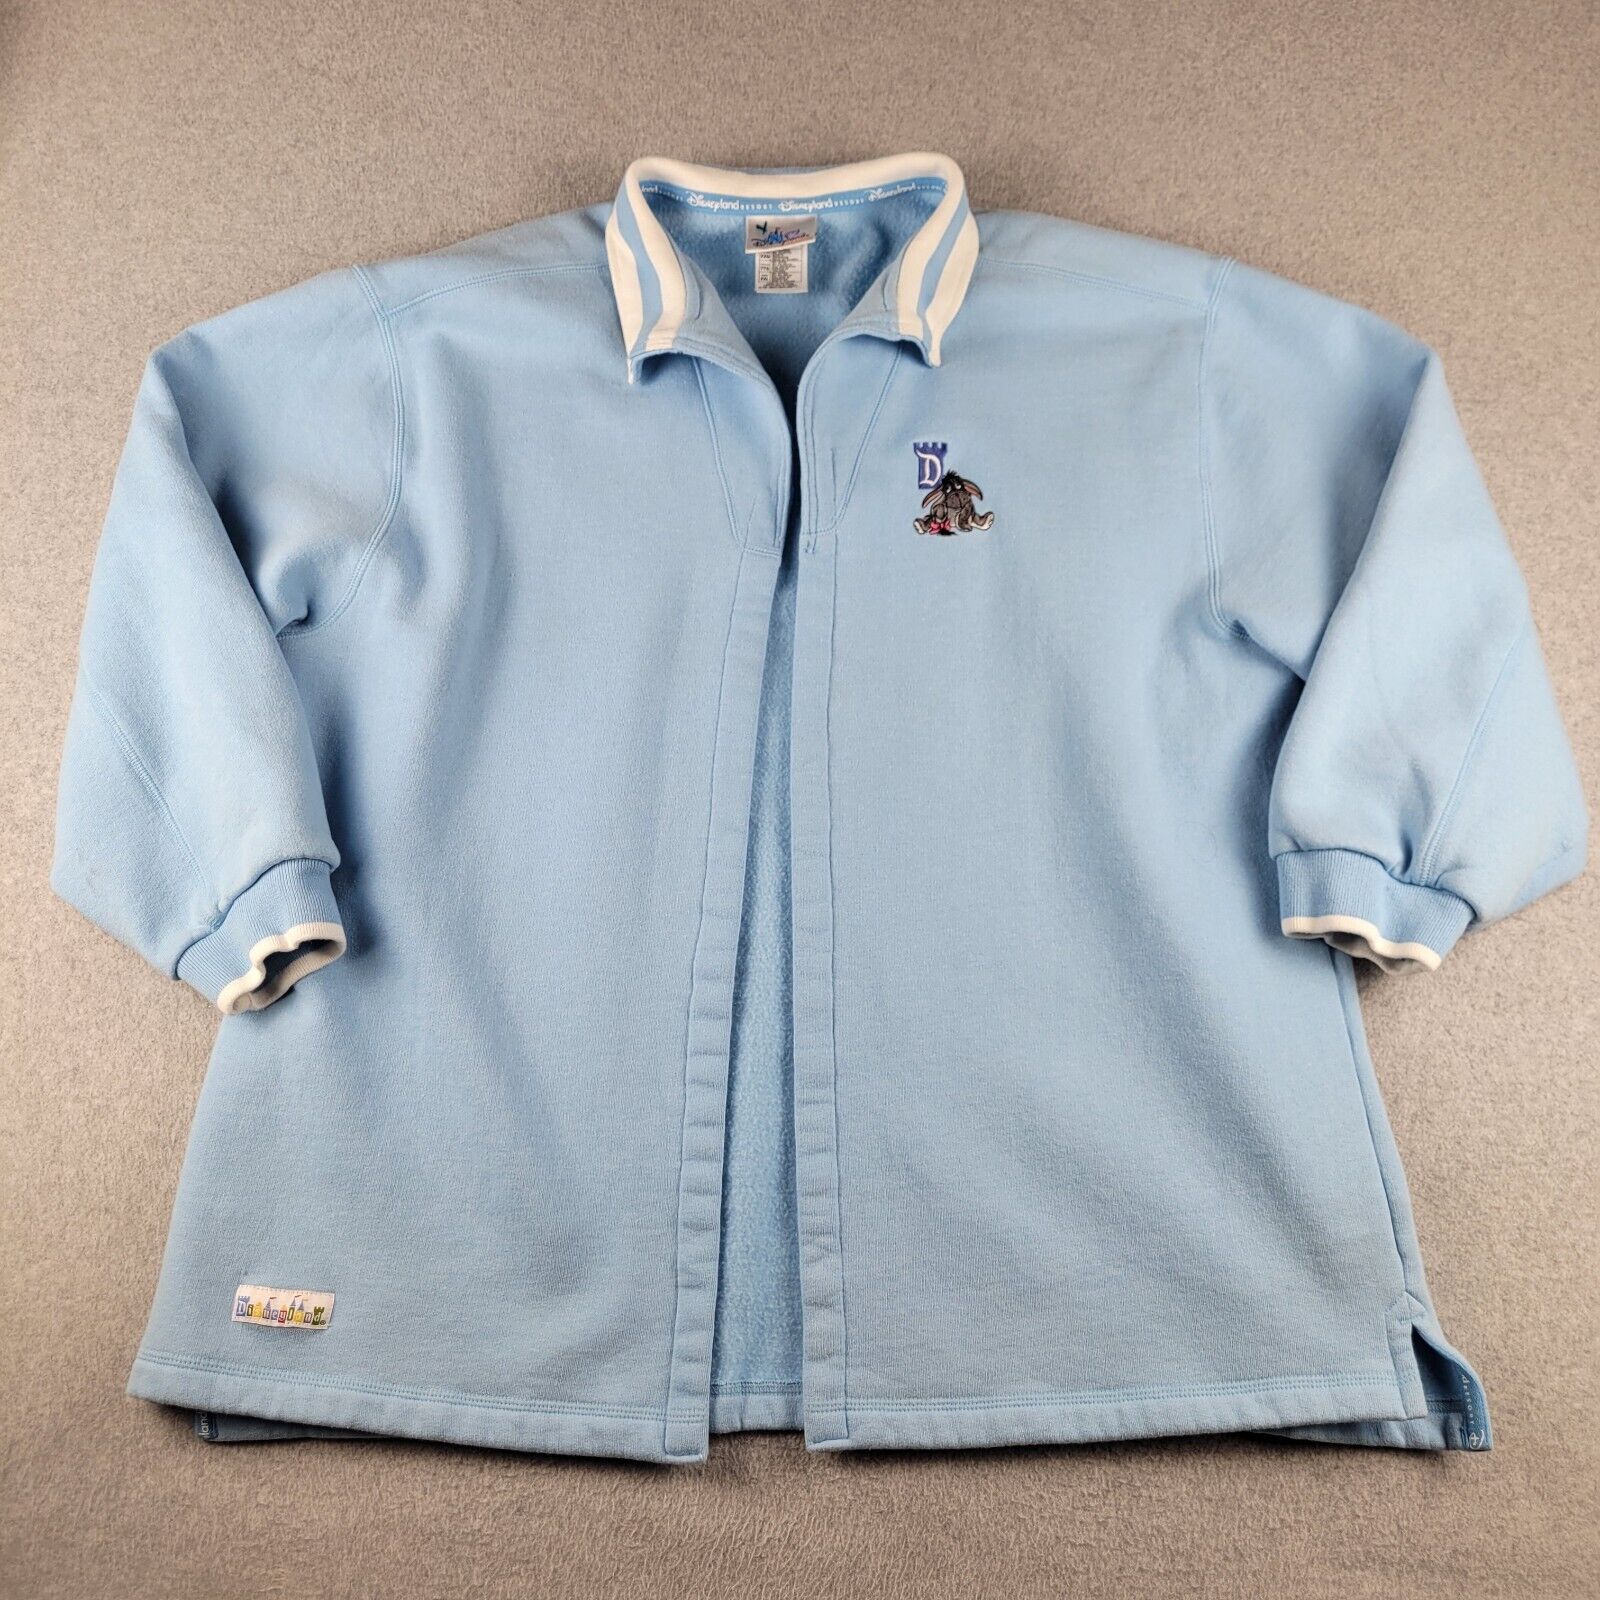 Vintage Disneyland Eeyore Sweatshirt Jacket Adult XXL 2XL Light Blue Open Front